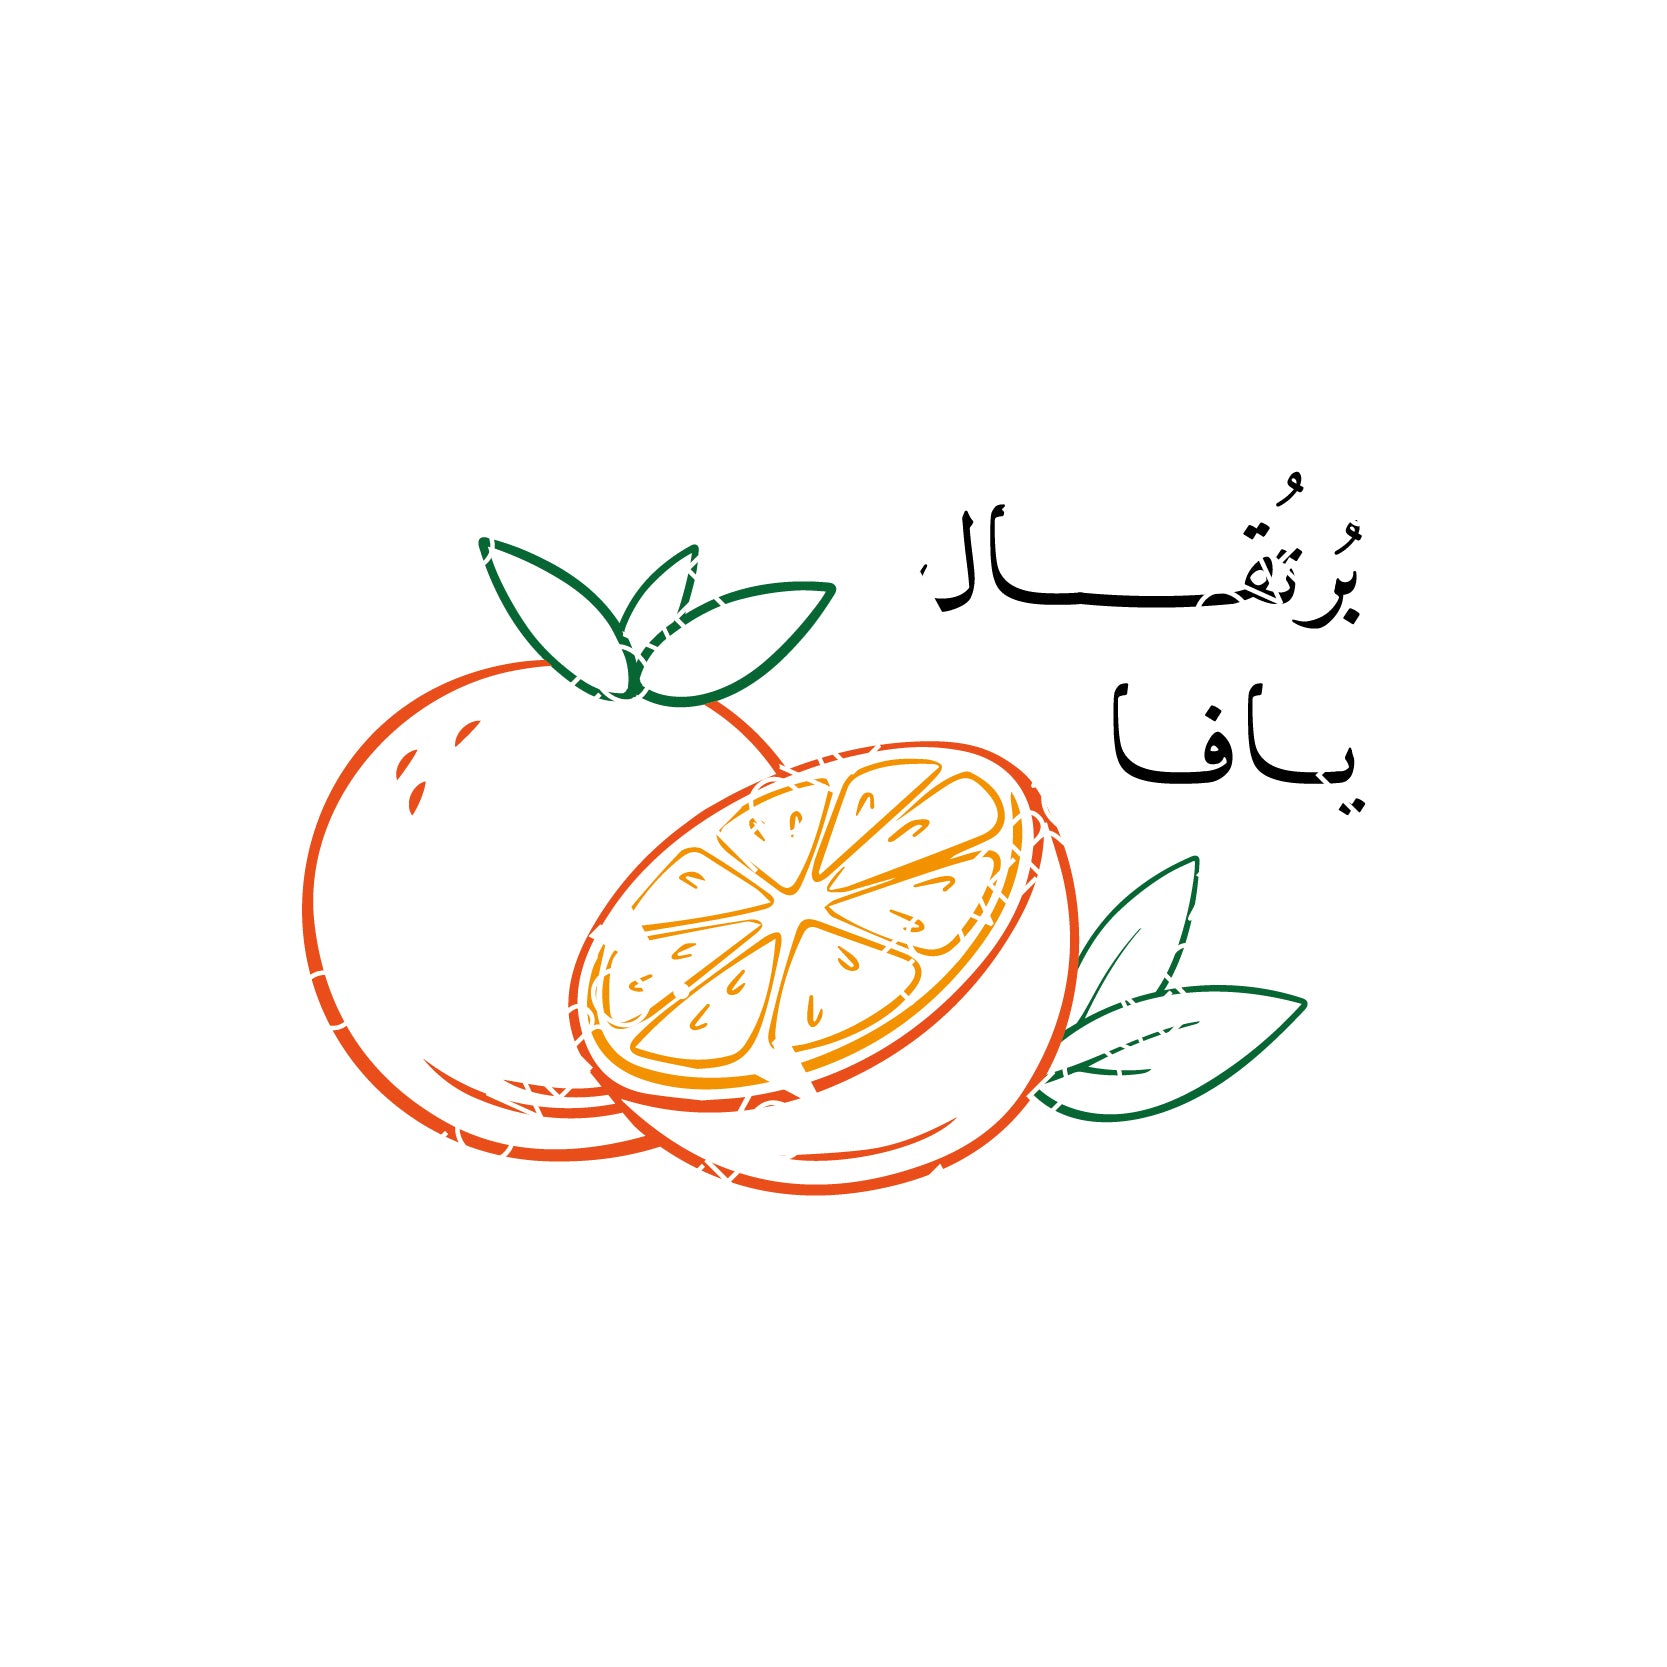 Jaffa's Orange